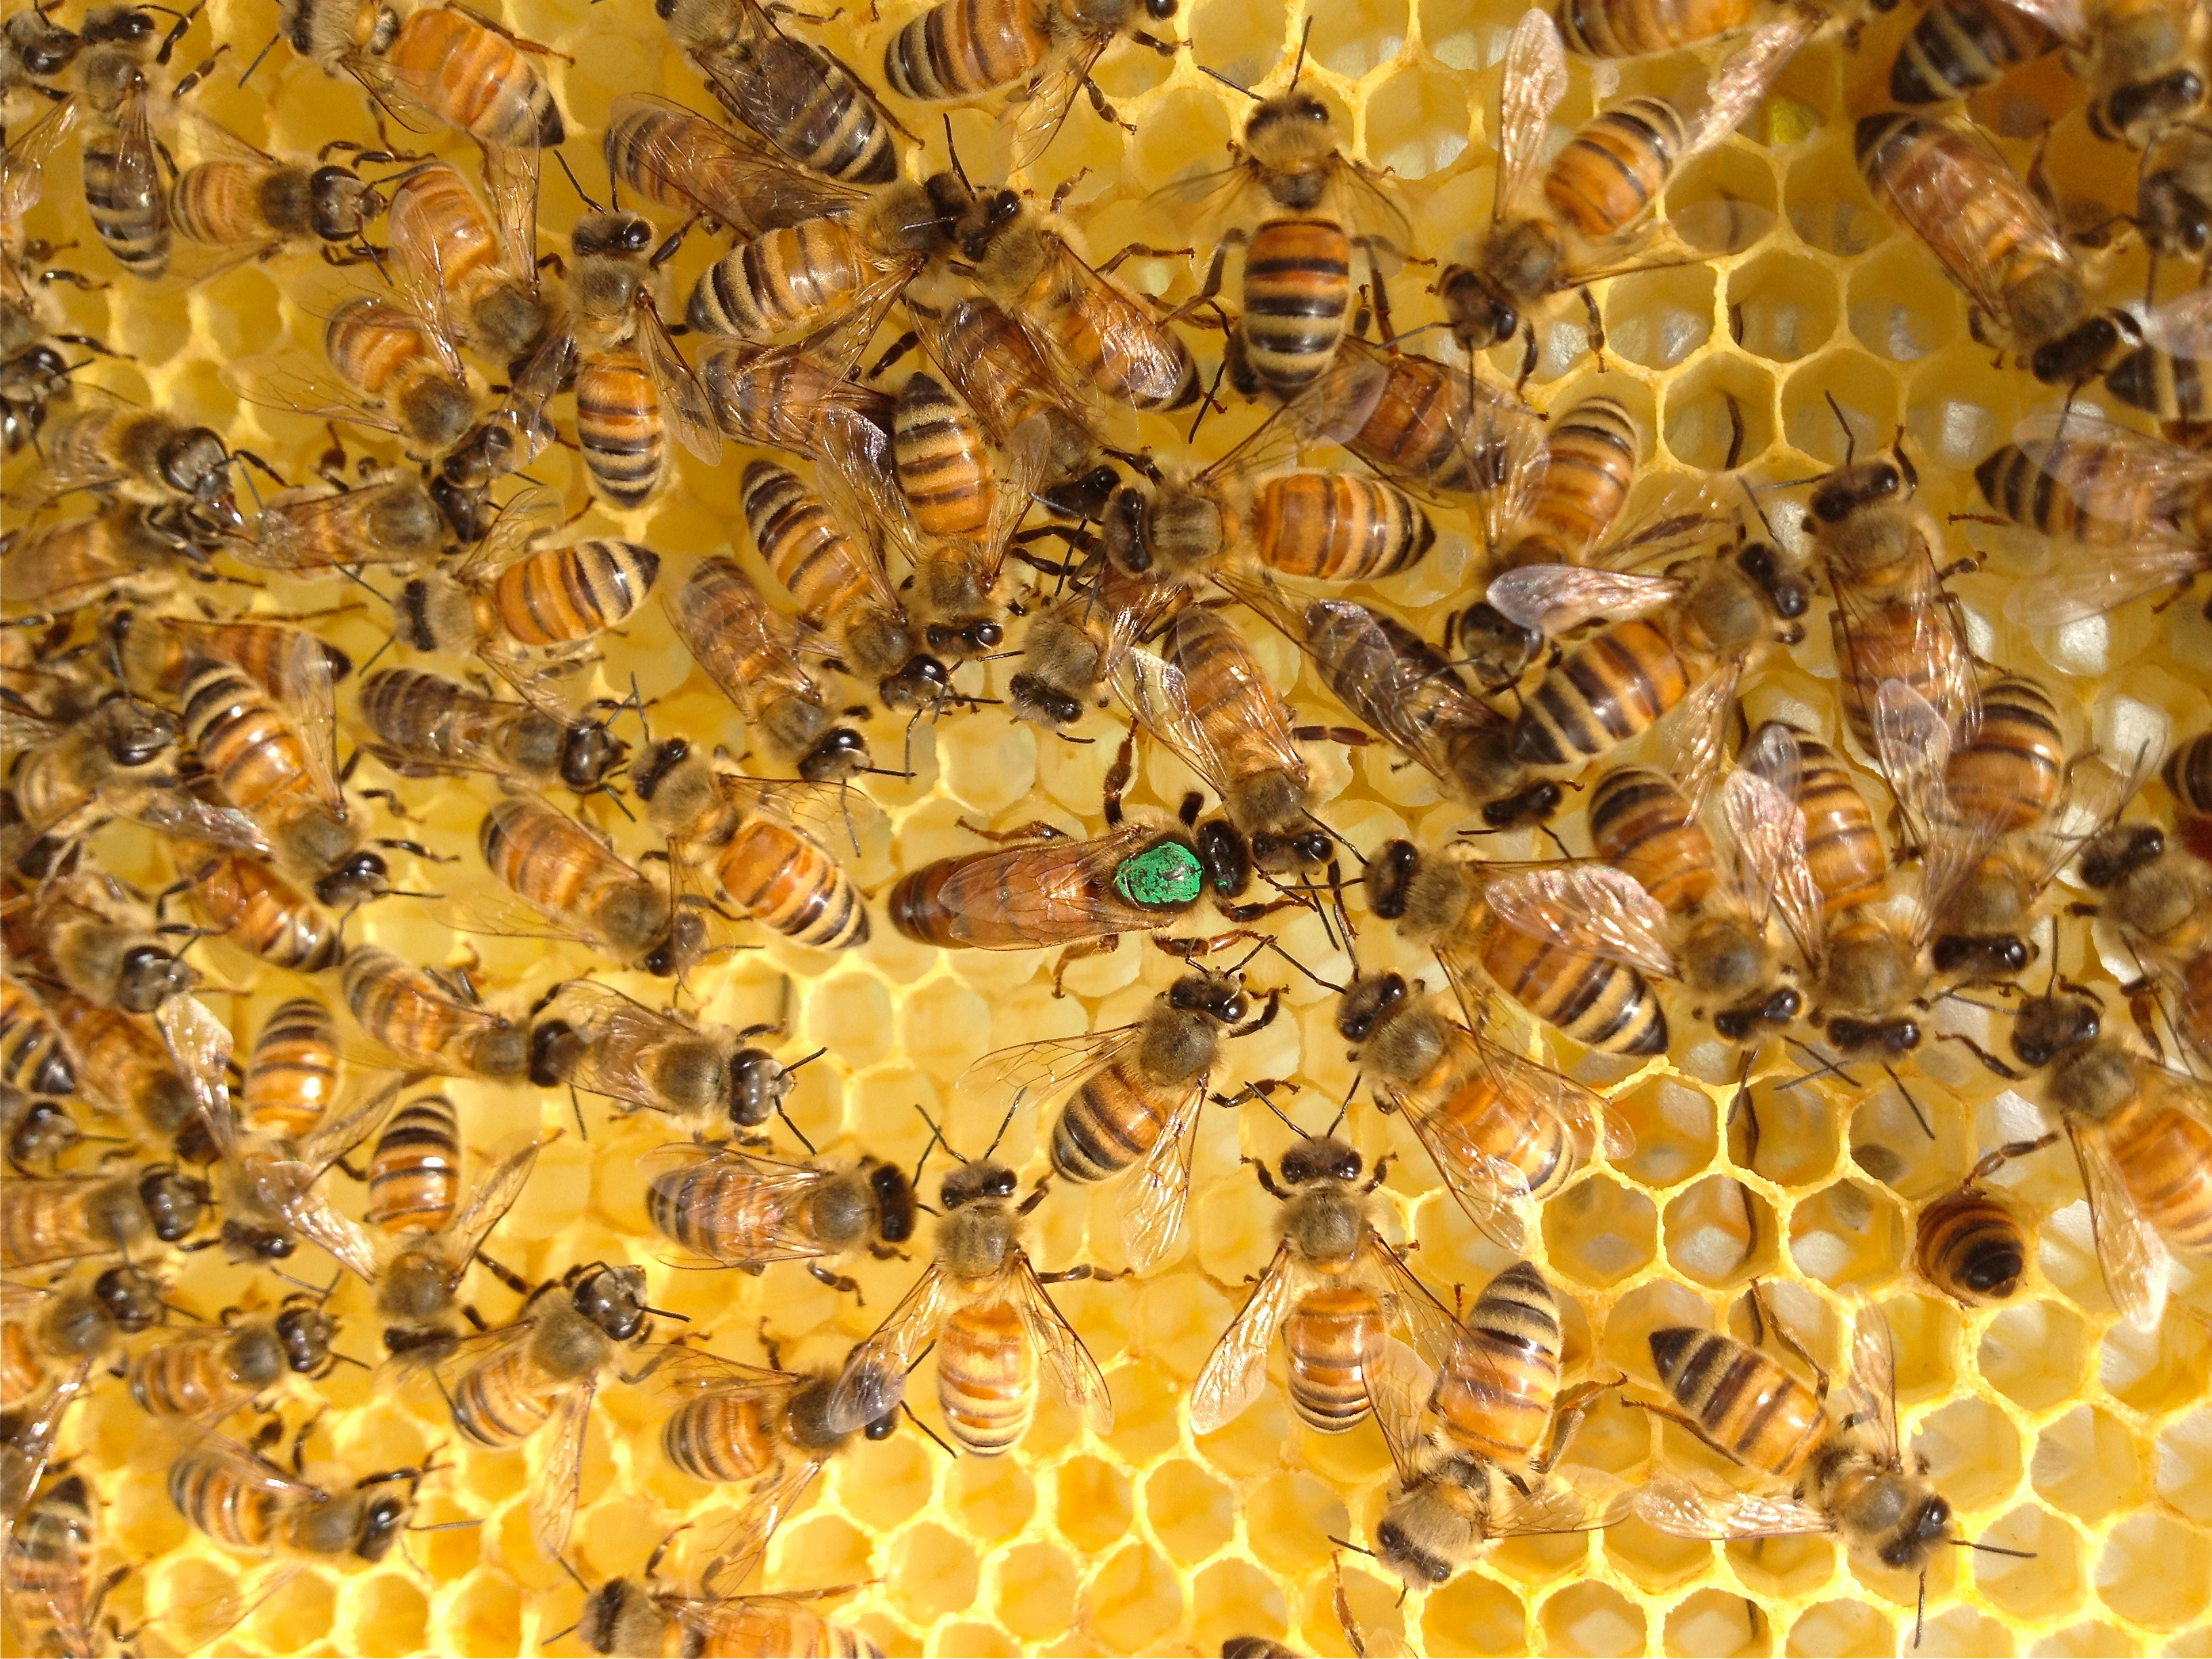 5 May 18 - Intermediate Beekeeping